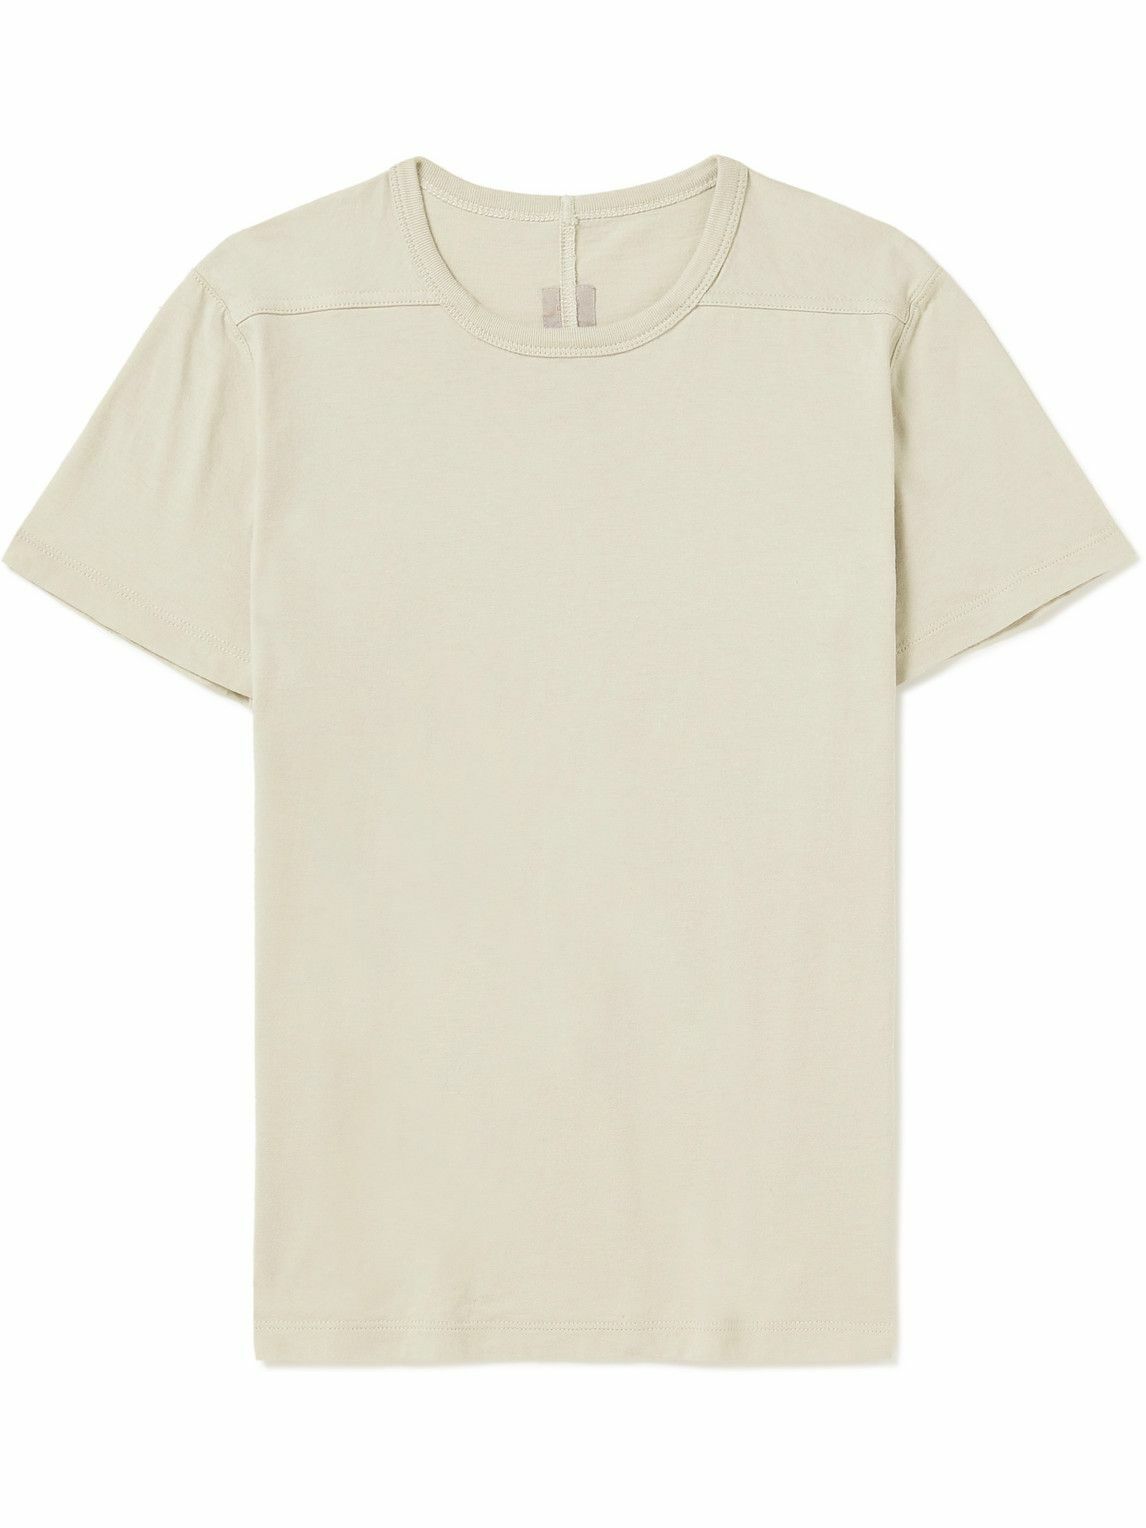 Rick Owens Kids - Level Cotton-Jersey T-Shirt - Neutrals